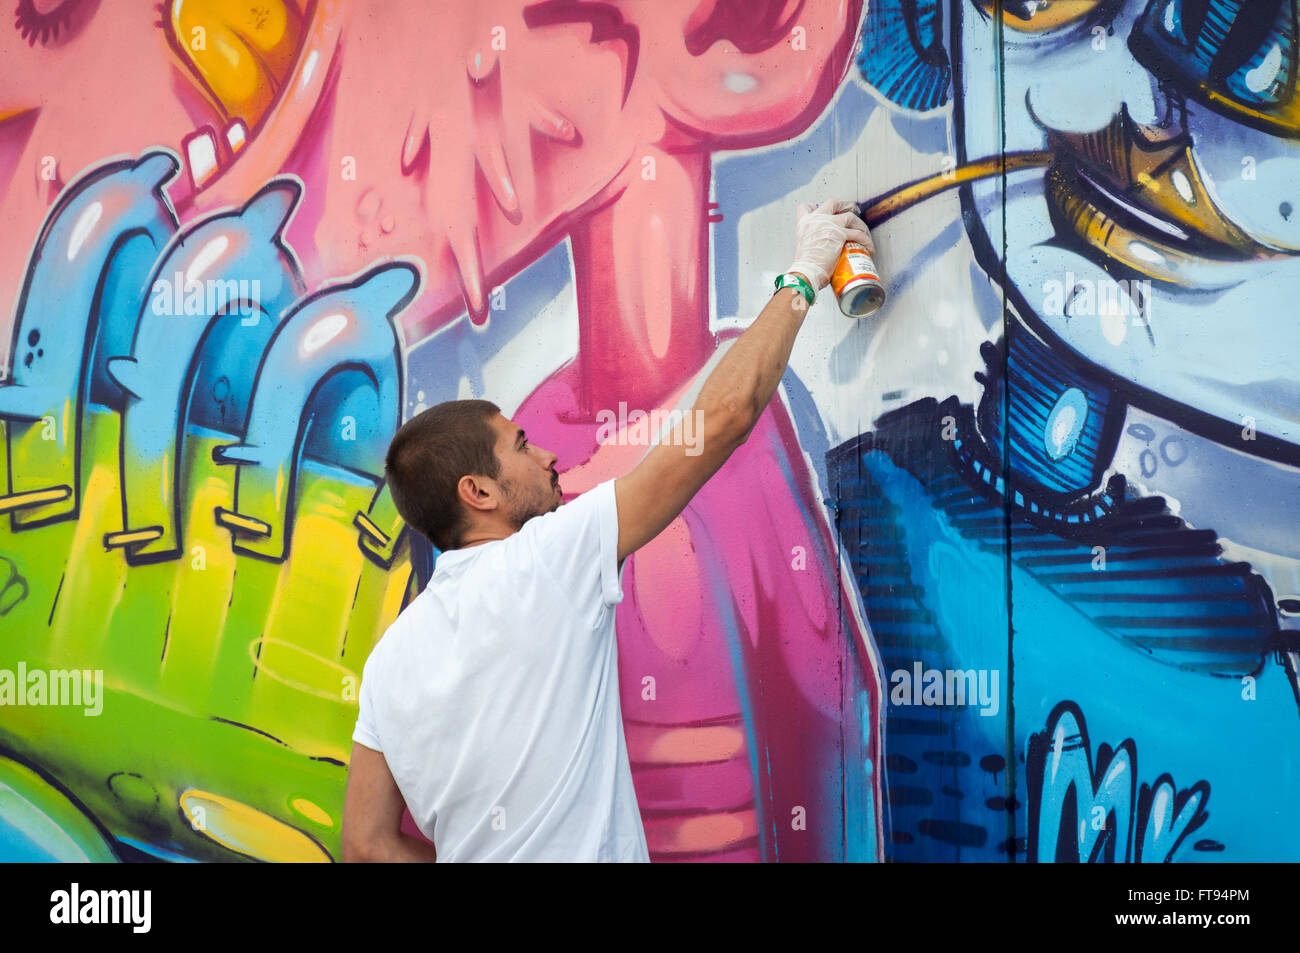 Artiste graffiti peinture Banque D'Images